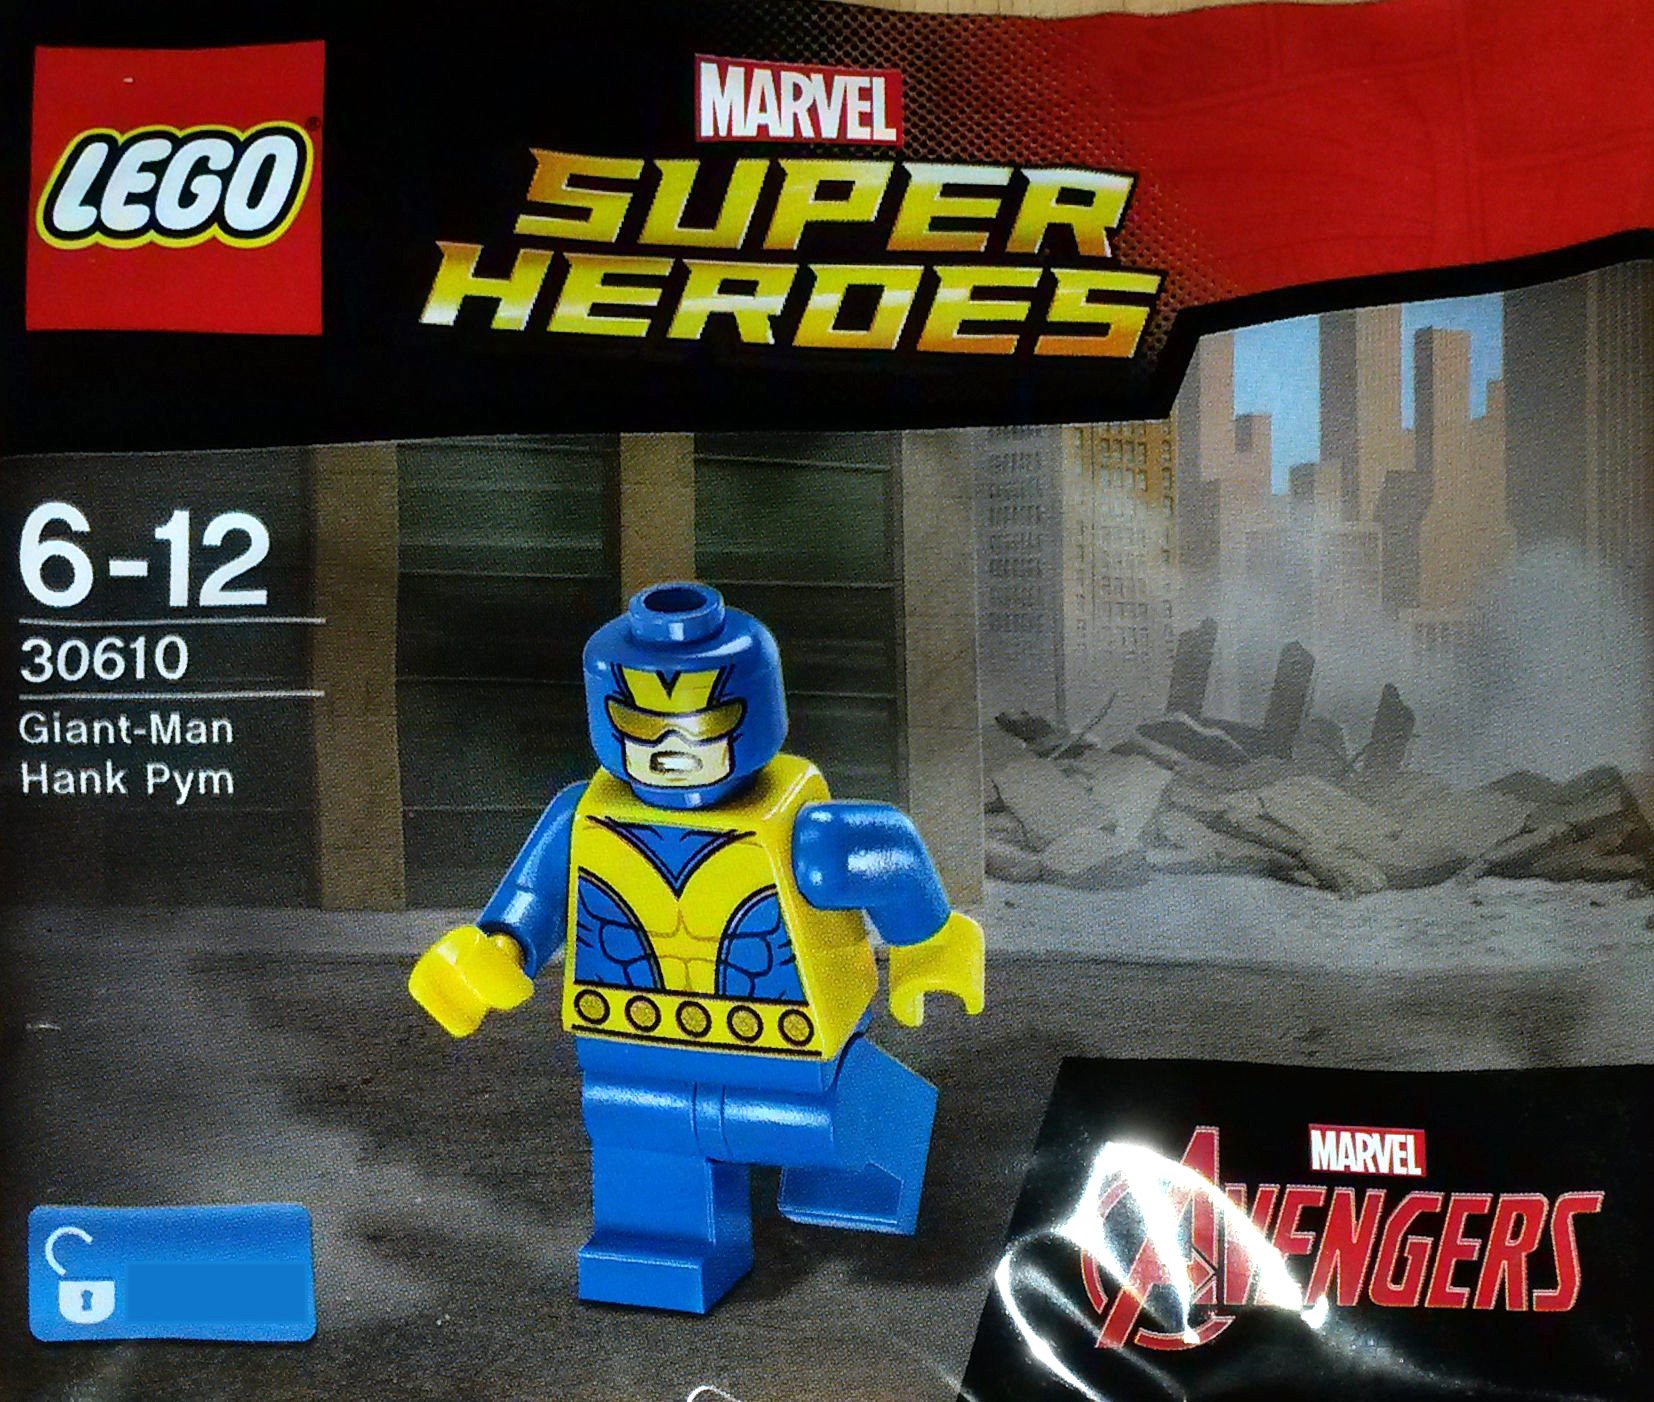 Marvel Super Heroes 2017 Brickset Lego Set Guide And